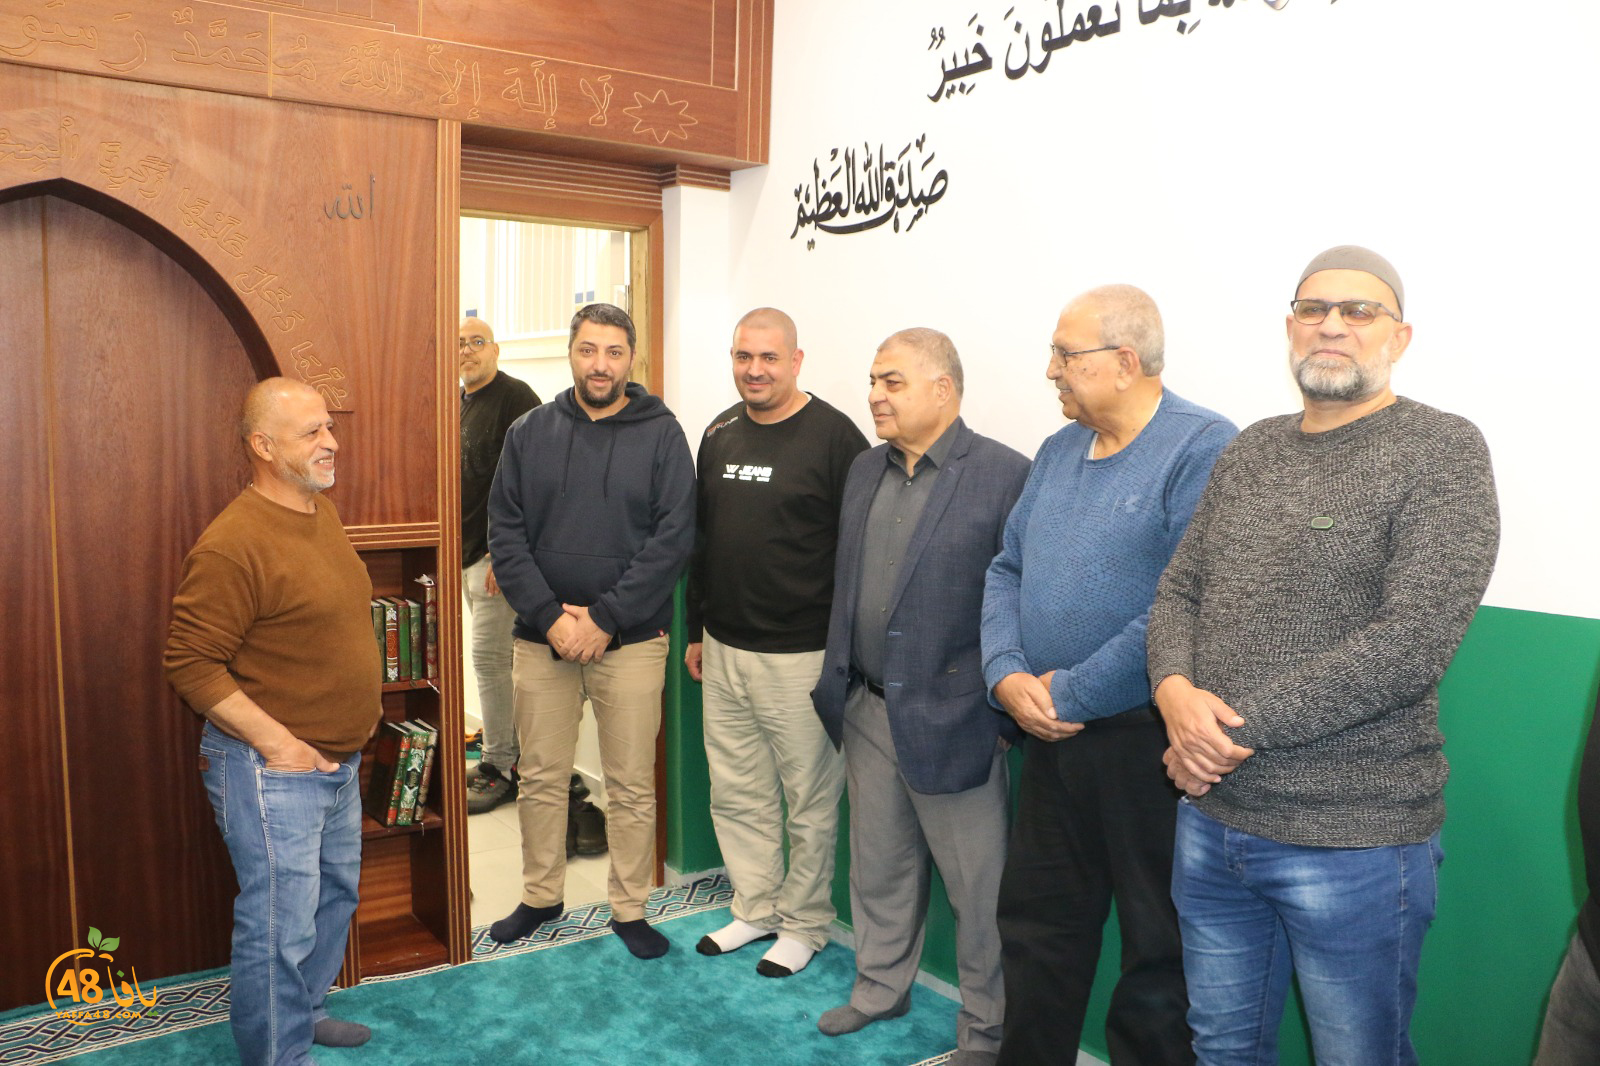  افتتاح مصلى في مدرسة حسن عرفة الابتدائية في يافا